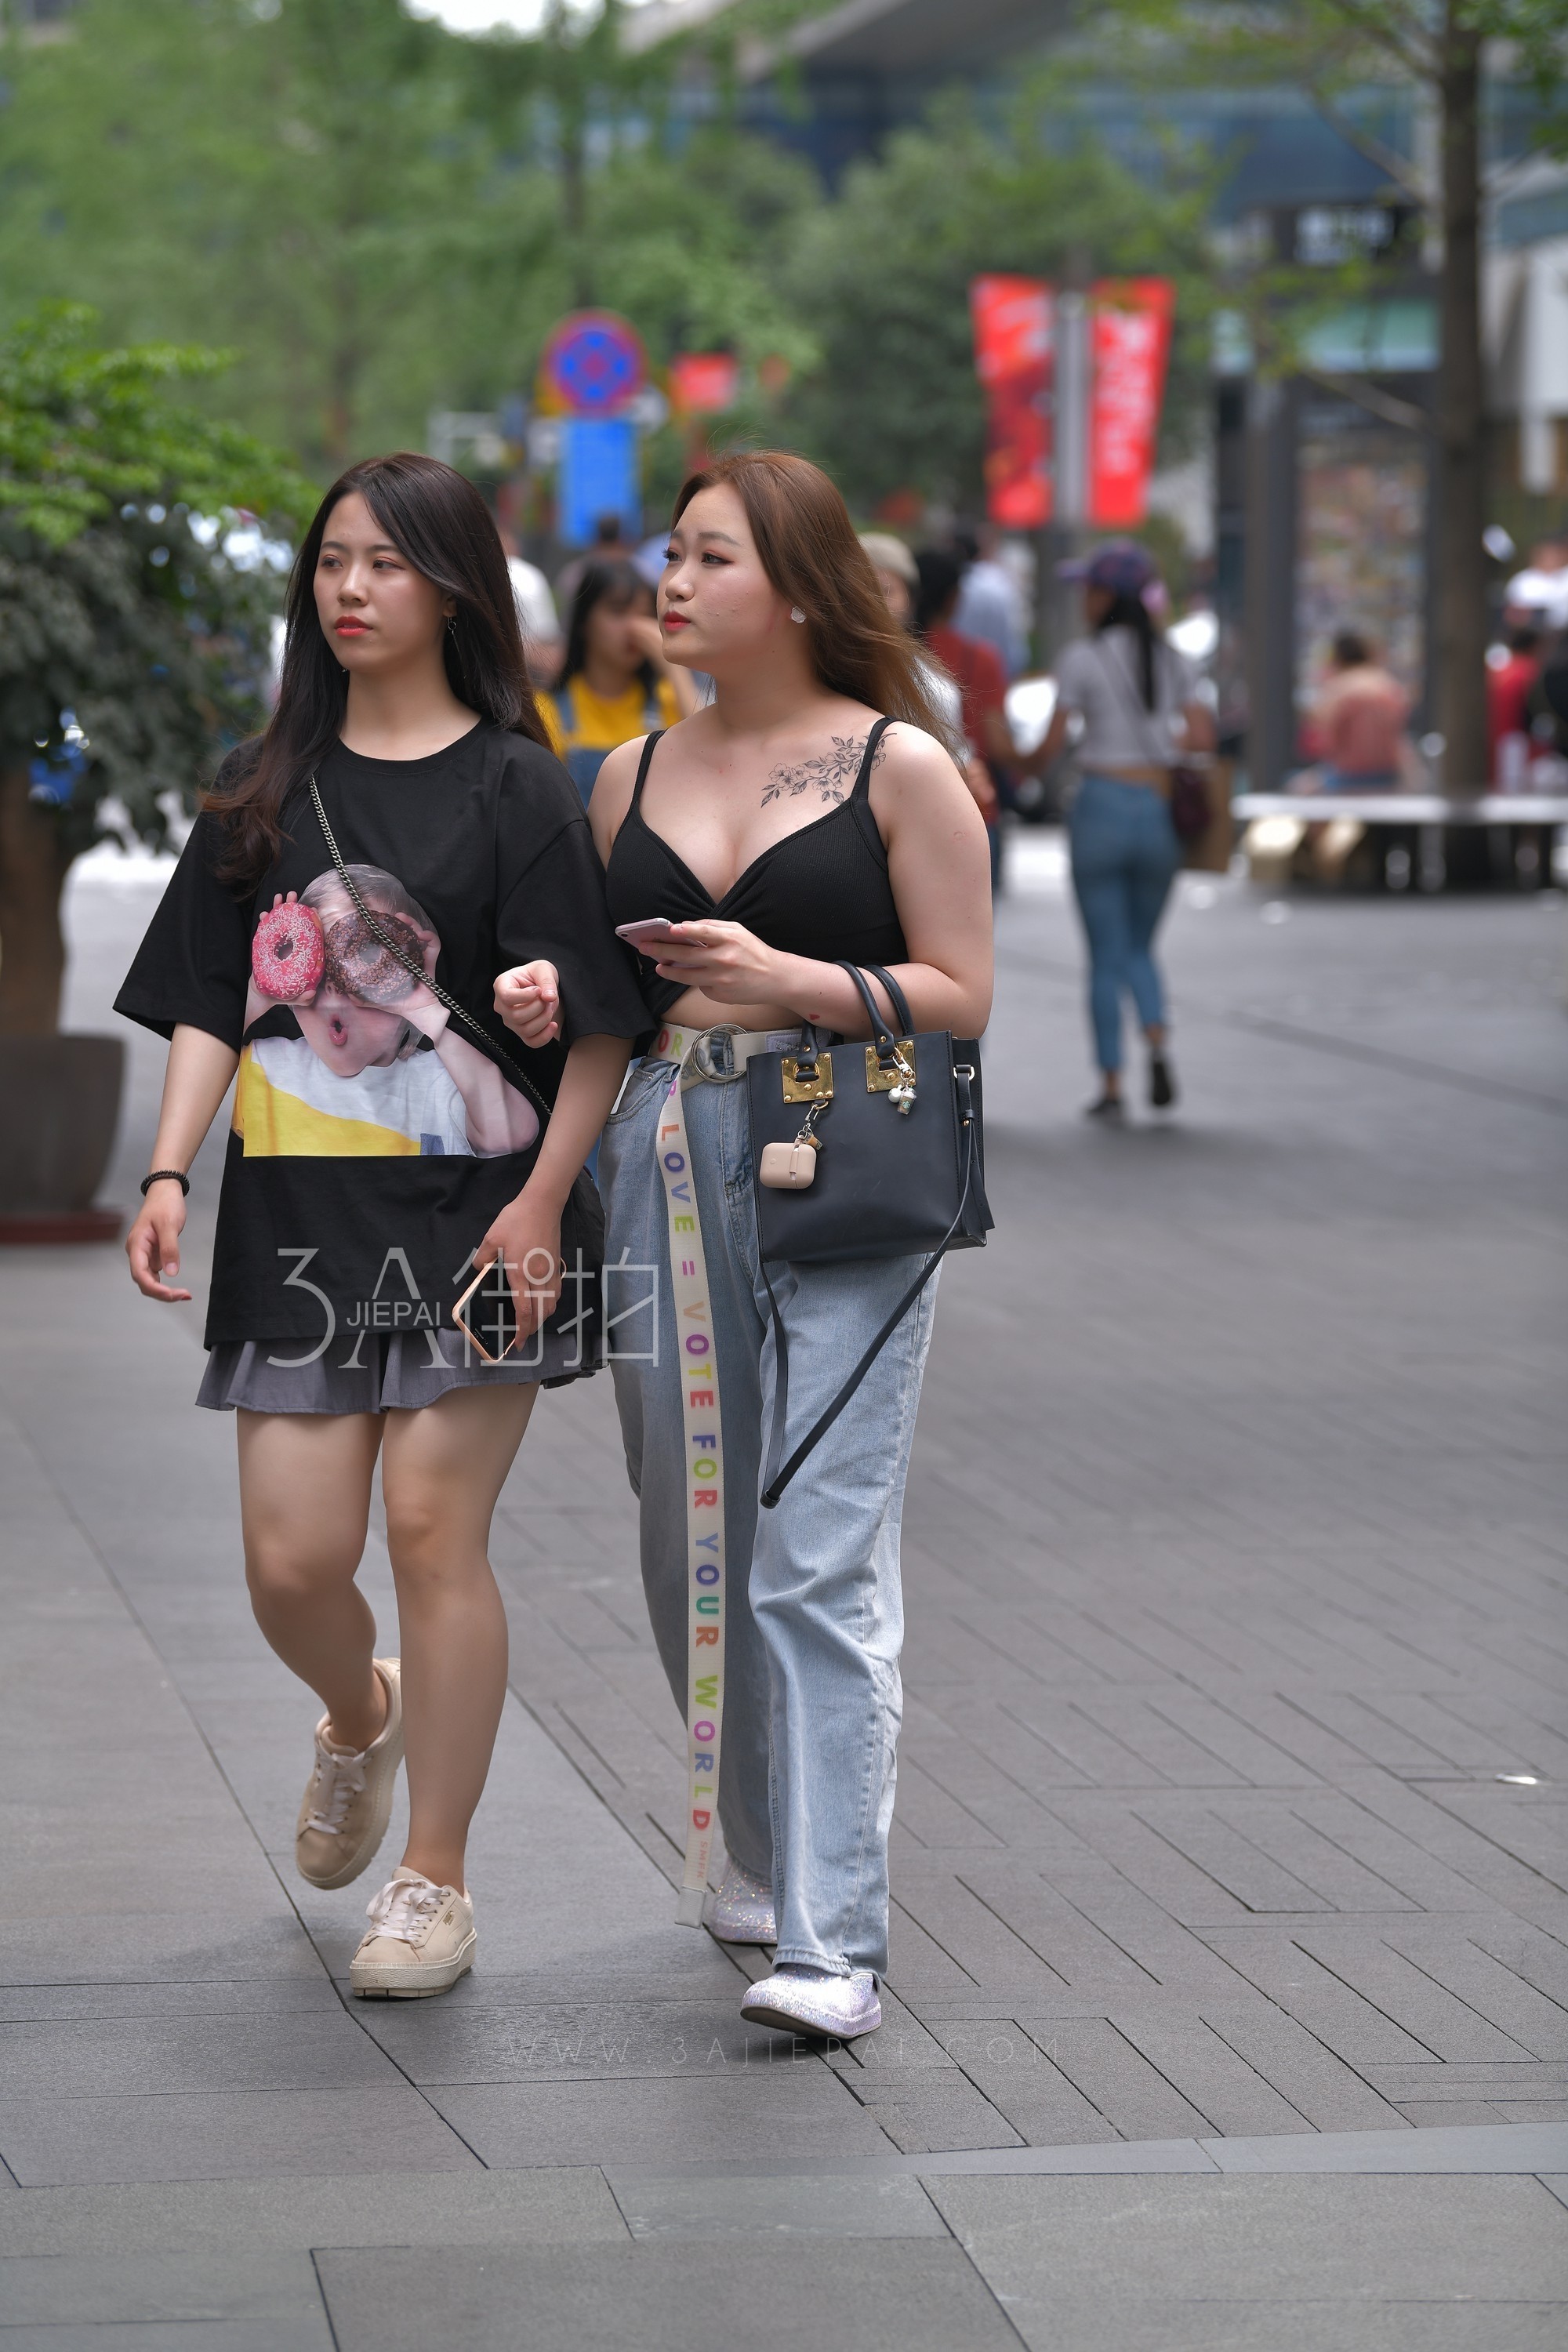 艳冠群芳的妖娆女孩，广州街拍[QT·939qr] - 免费·街拍图片 - 第一街拍网